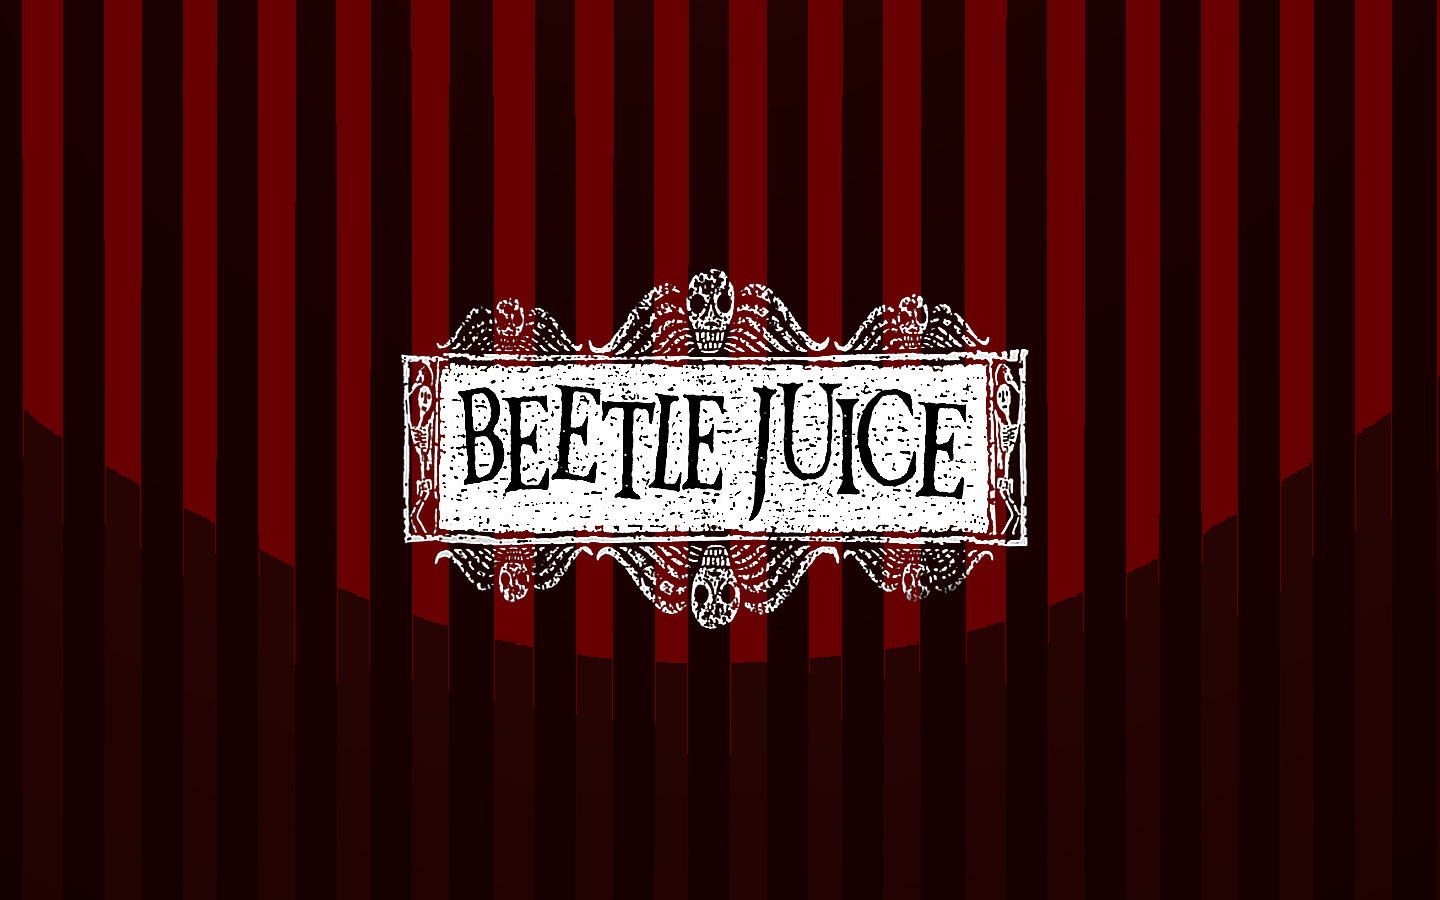 Beetlejuice Jpg